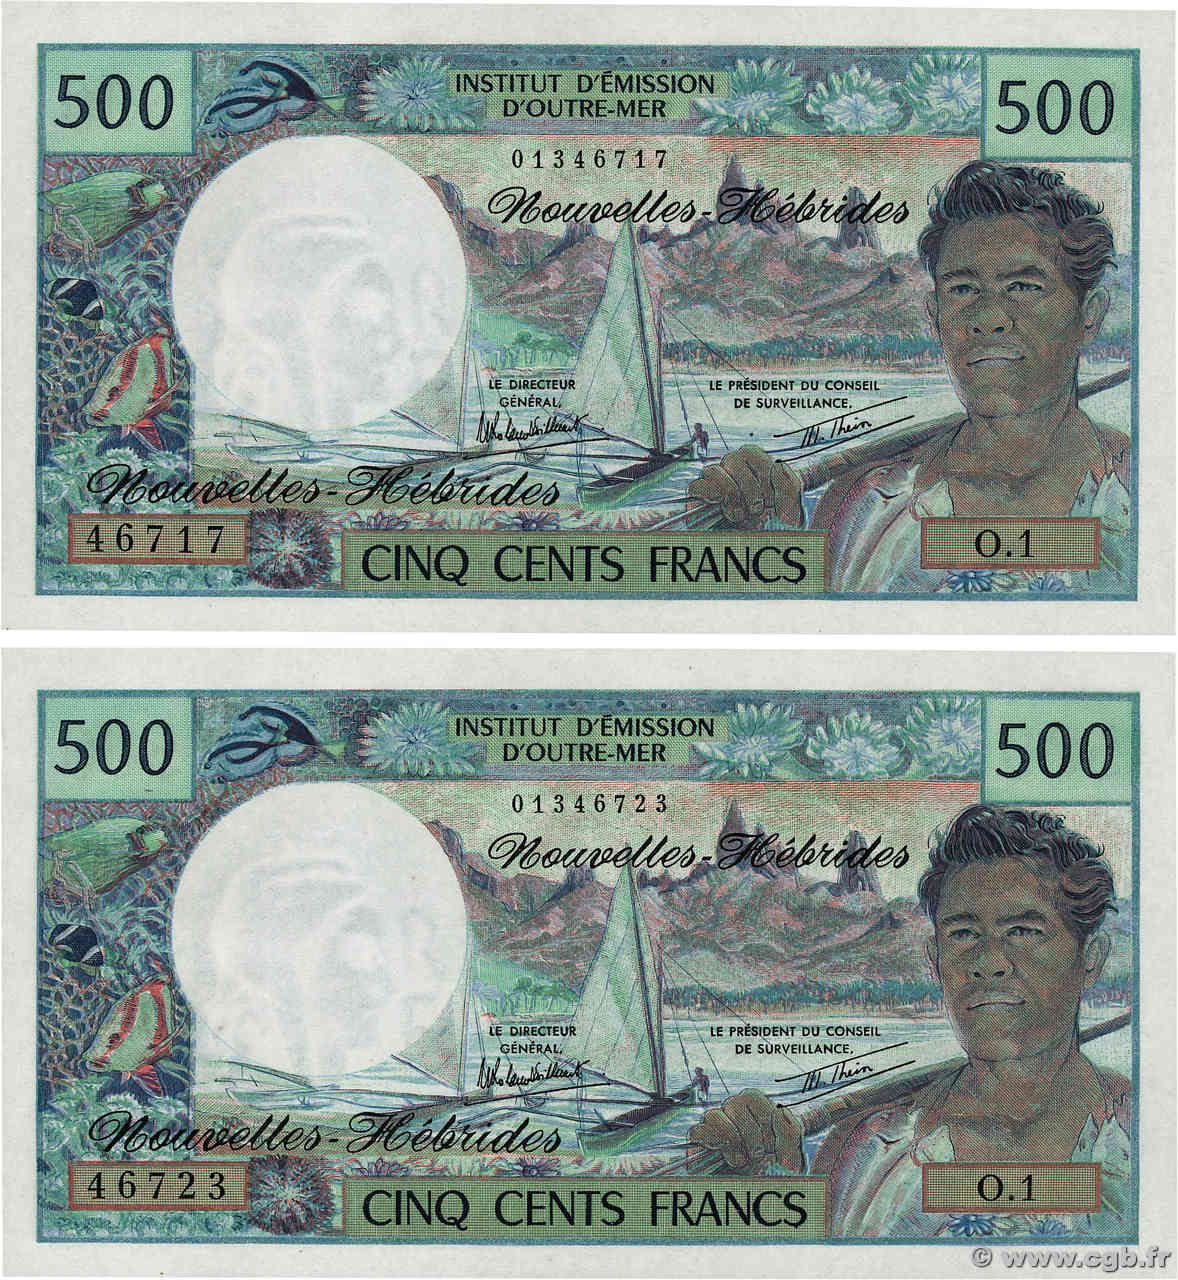 500 Francs Lot NEW HEBRIDES  1980 P.19c UNC-